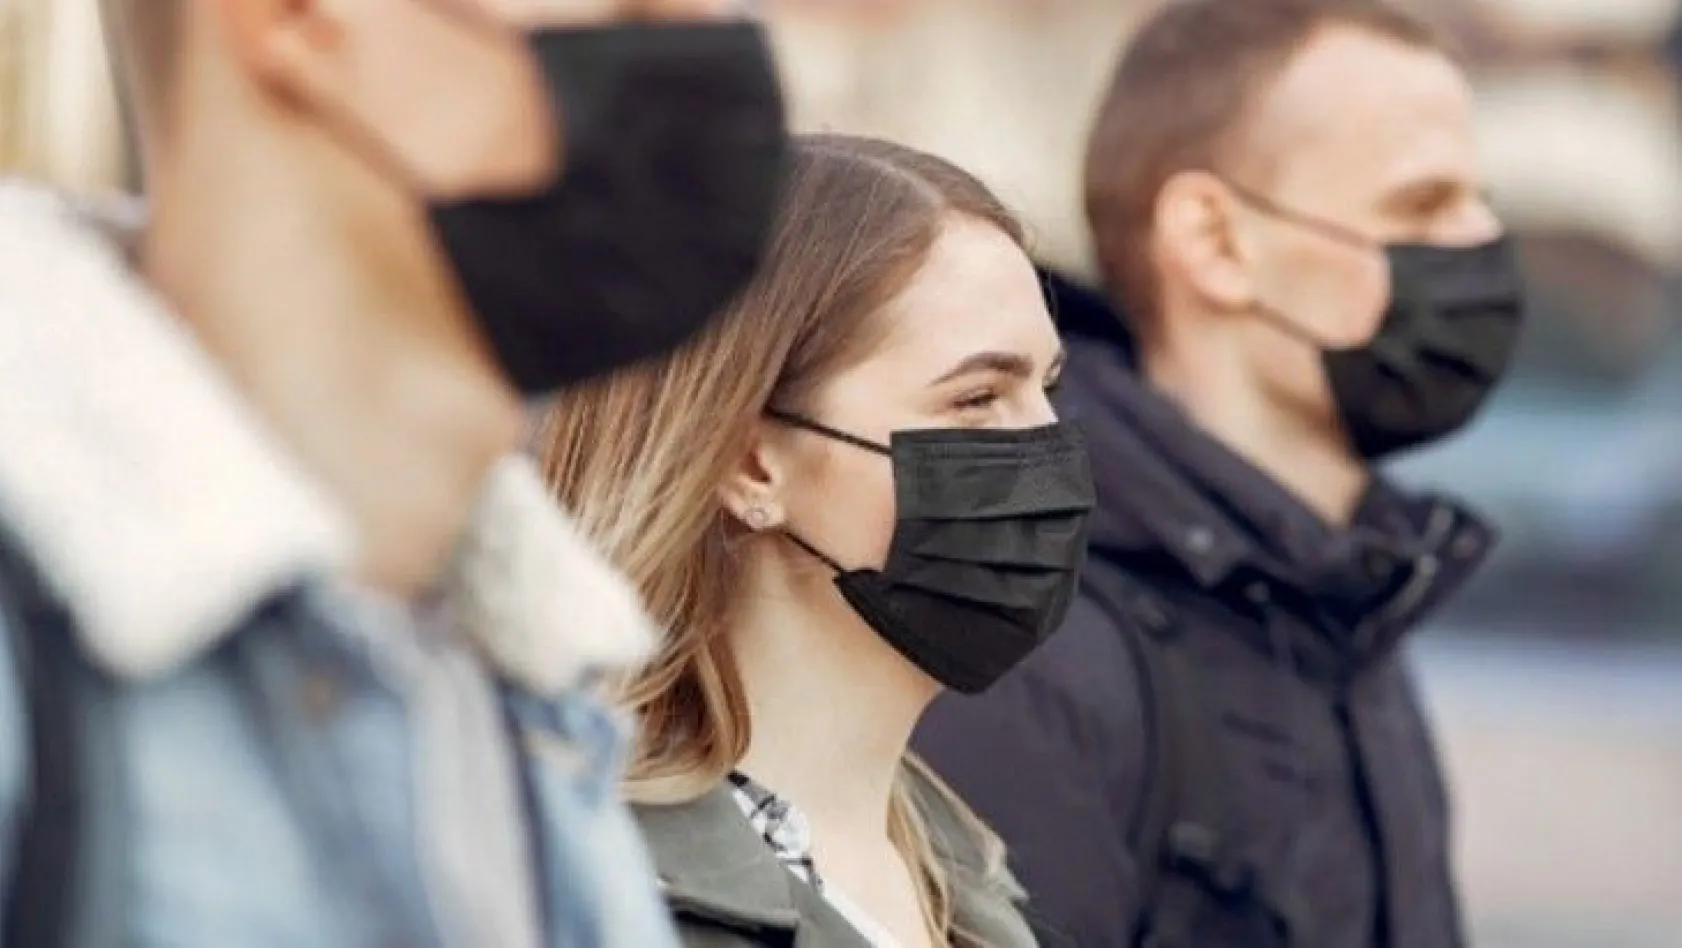 5 ilde daha maskesiz sokağa çıkmak yasaklandı